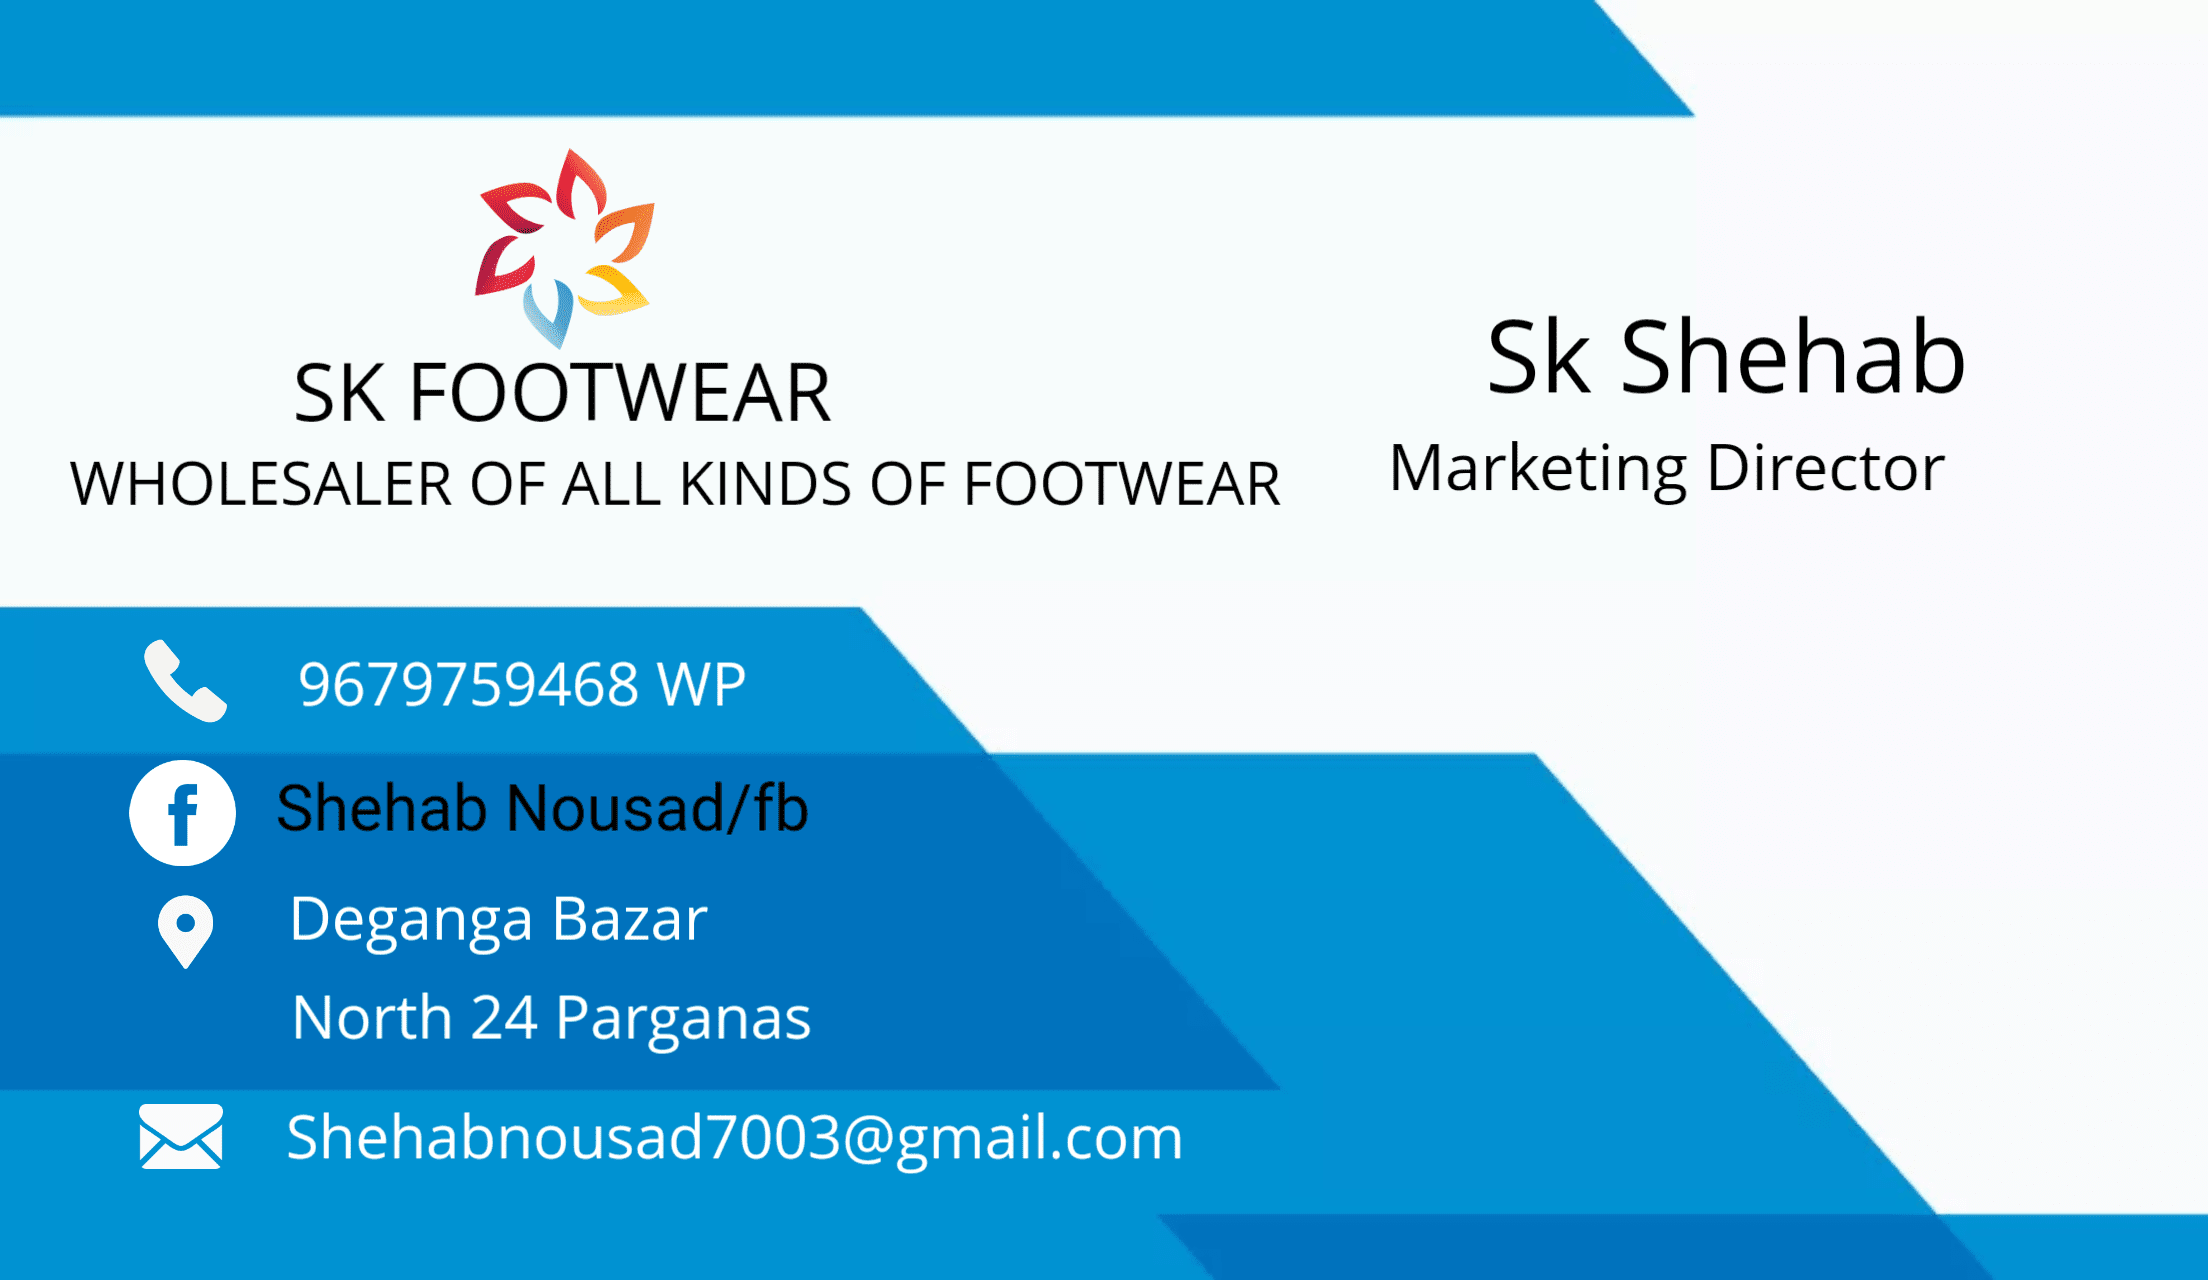 SK Footwear